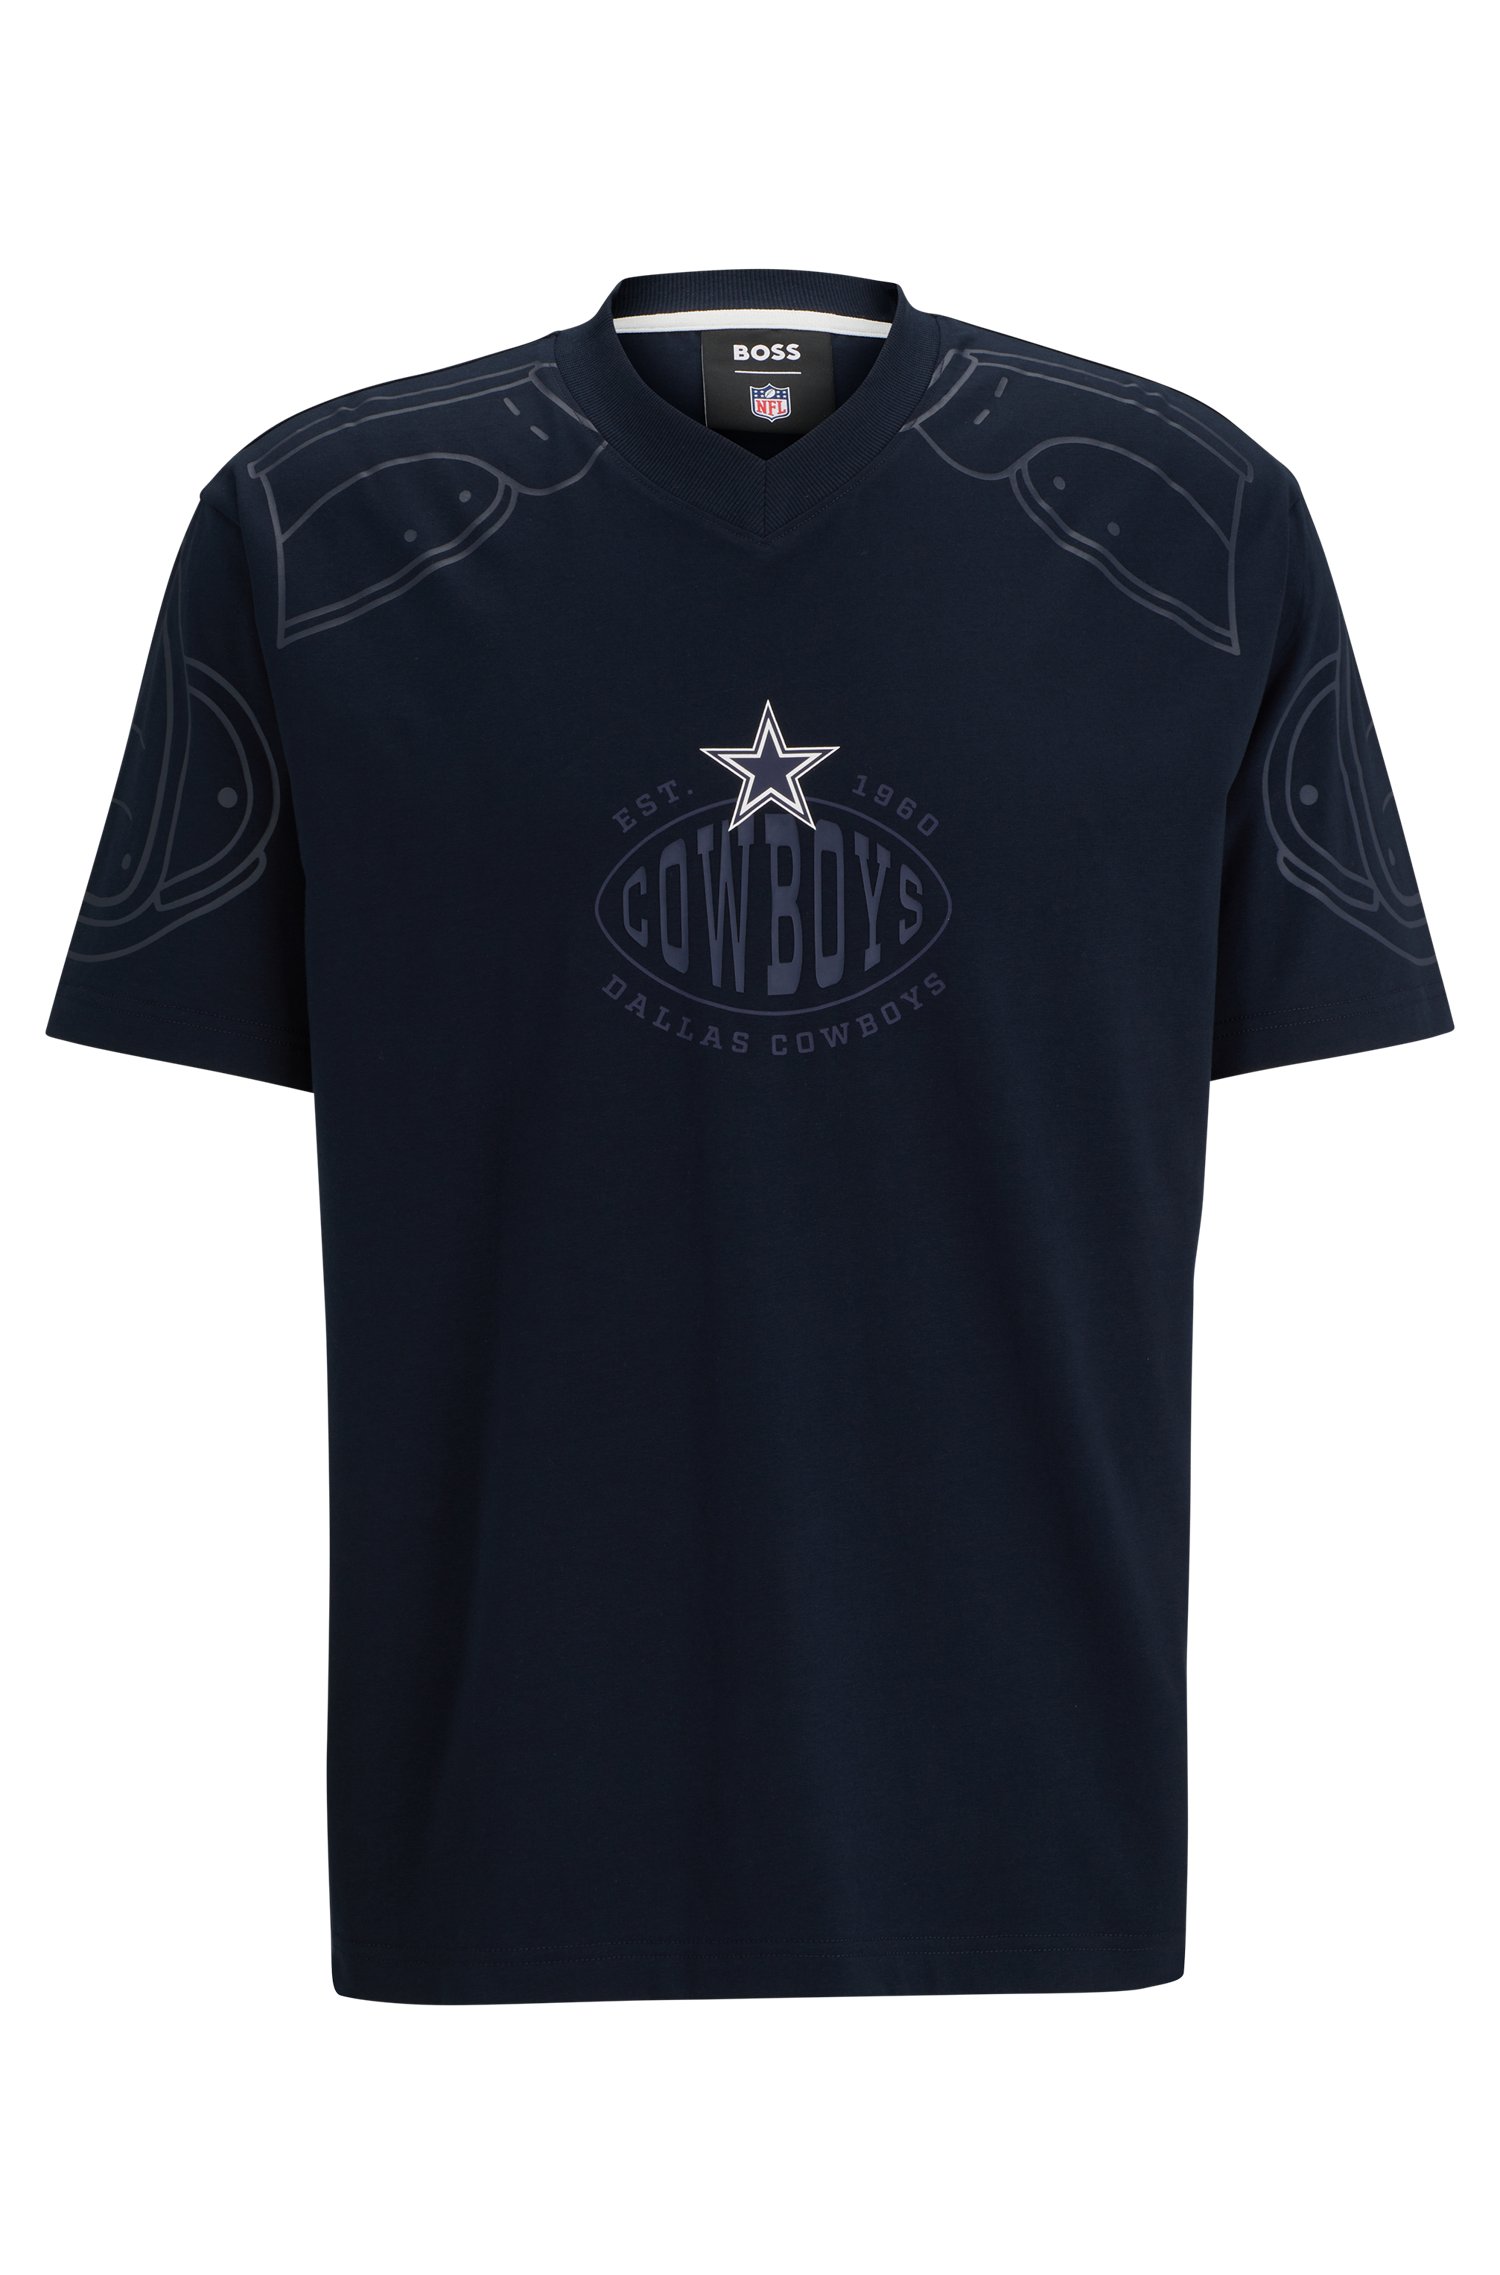 Camiseta oversize fit BOSS x NFL con detalle de la colaboración